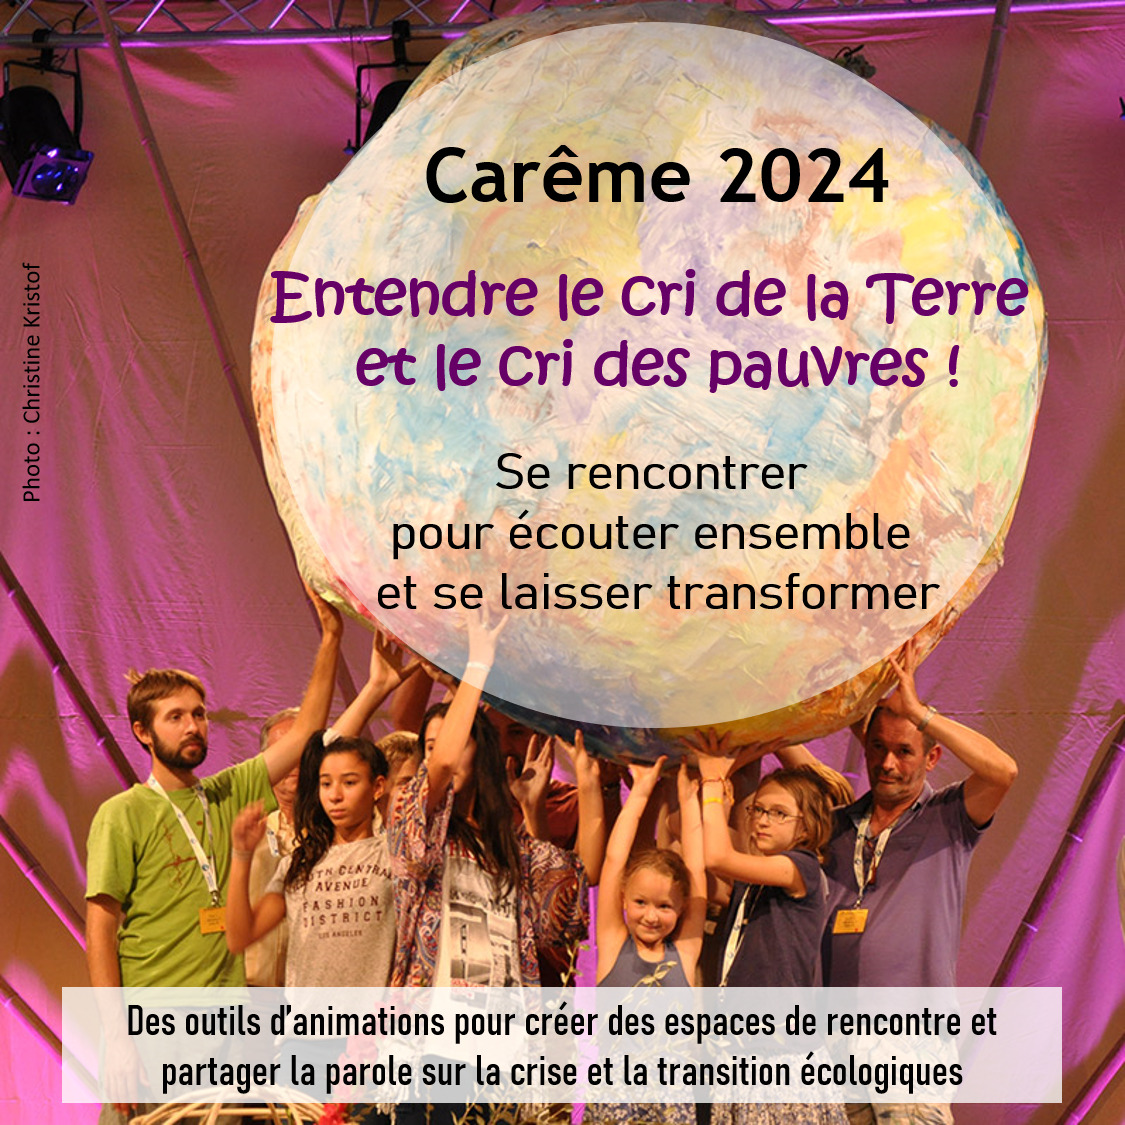 Campagne de Carême 2024 - Entendre le cri de la Terre et le cri des pauvres  !